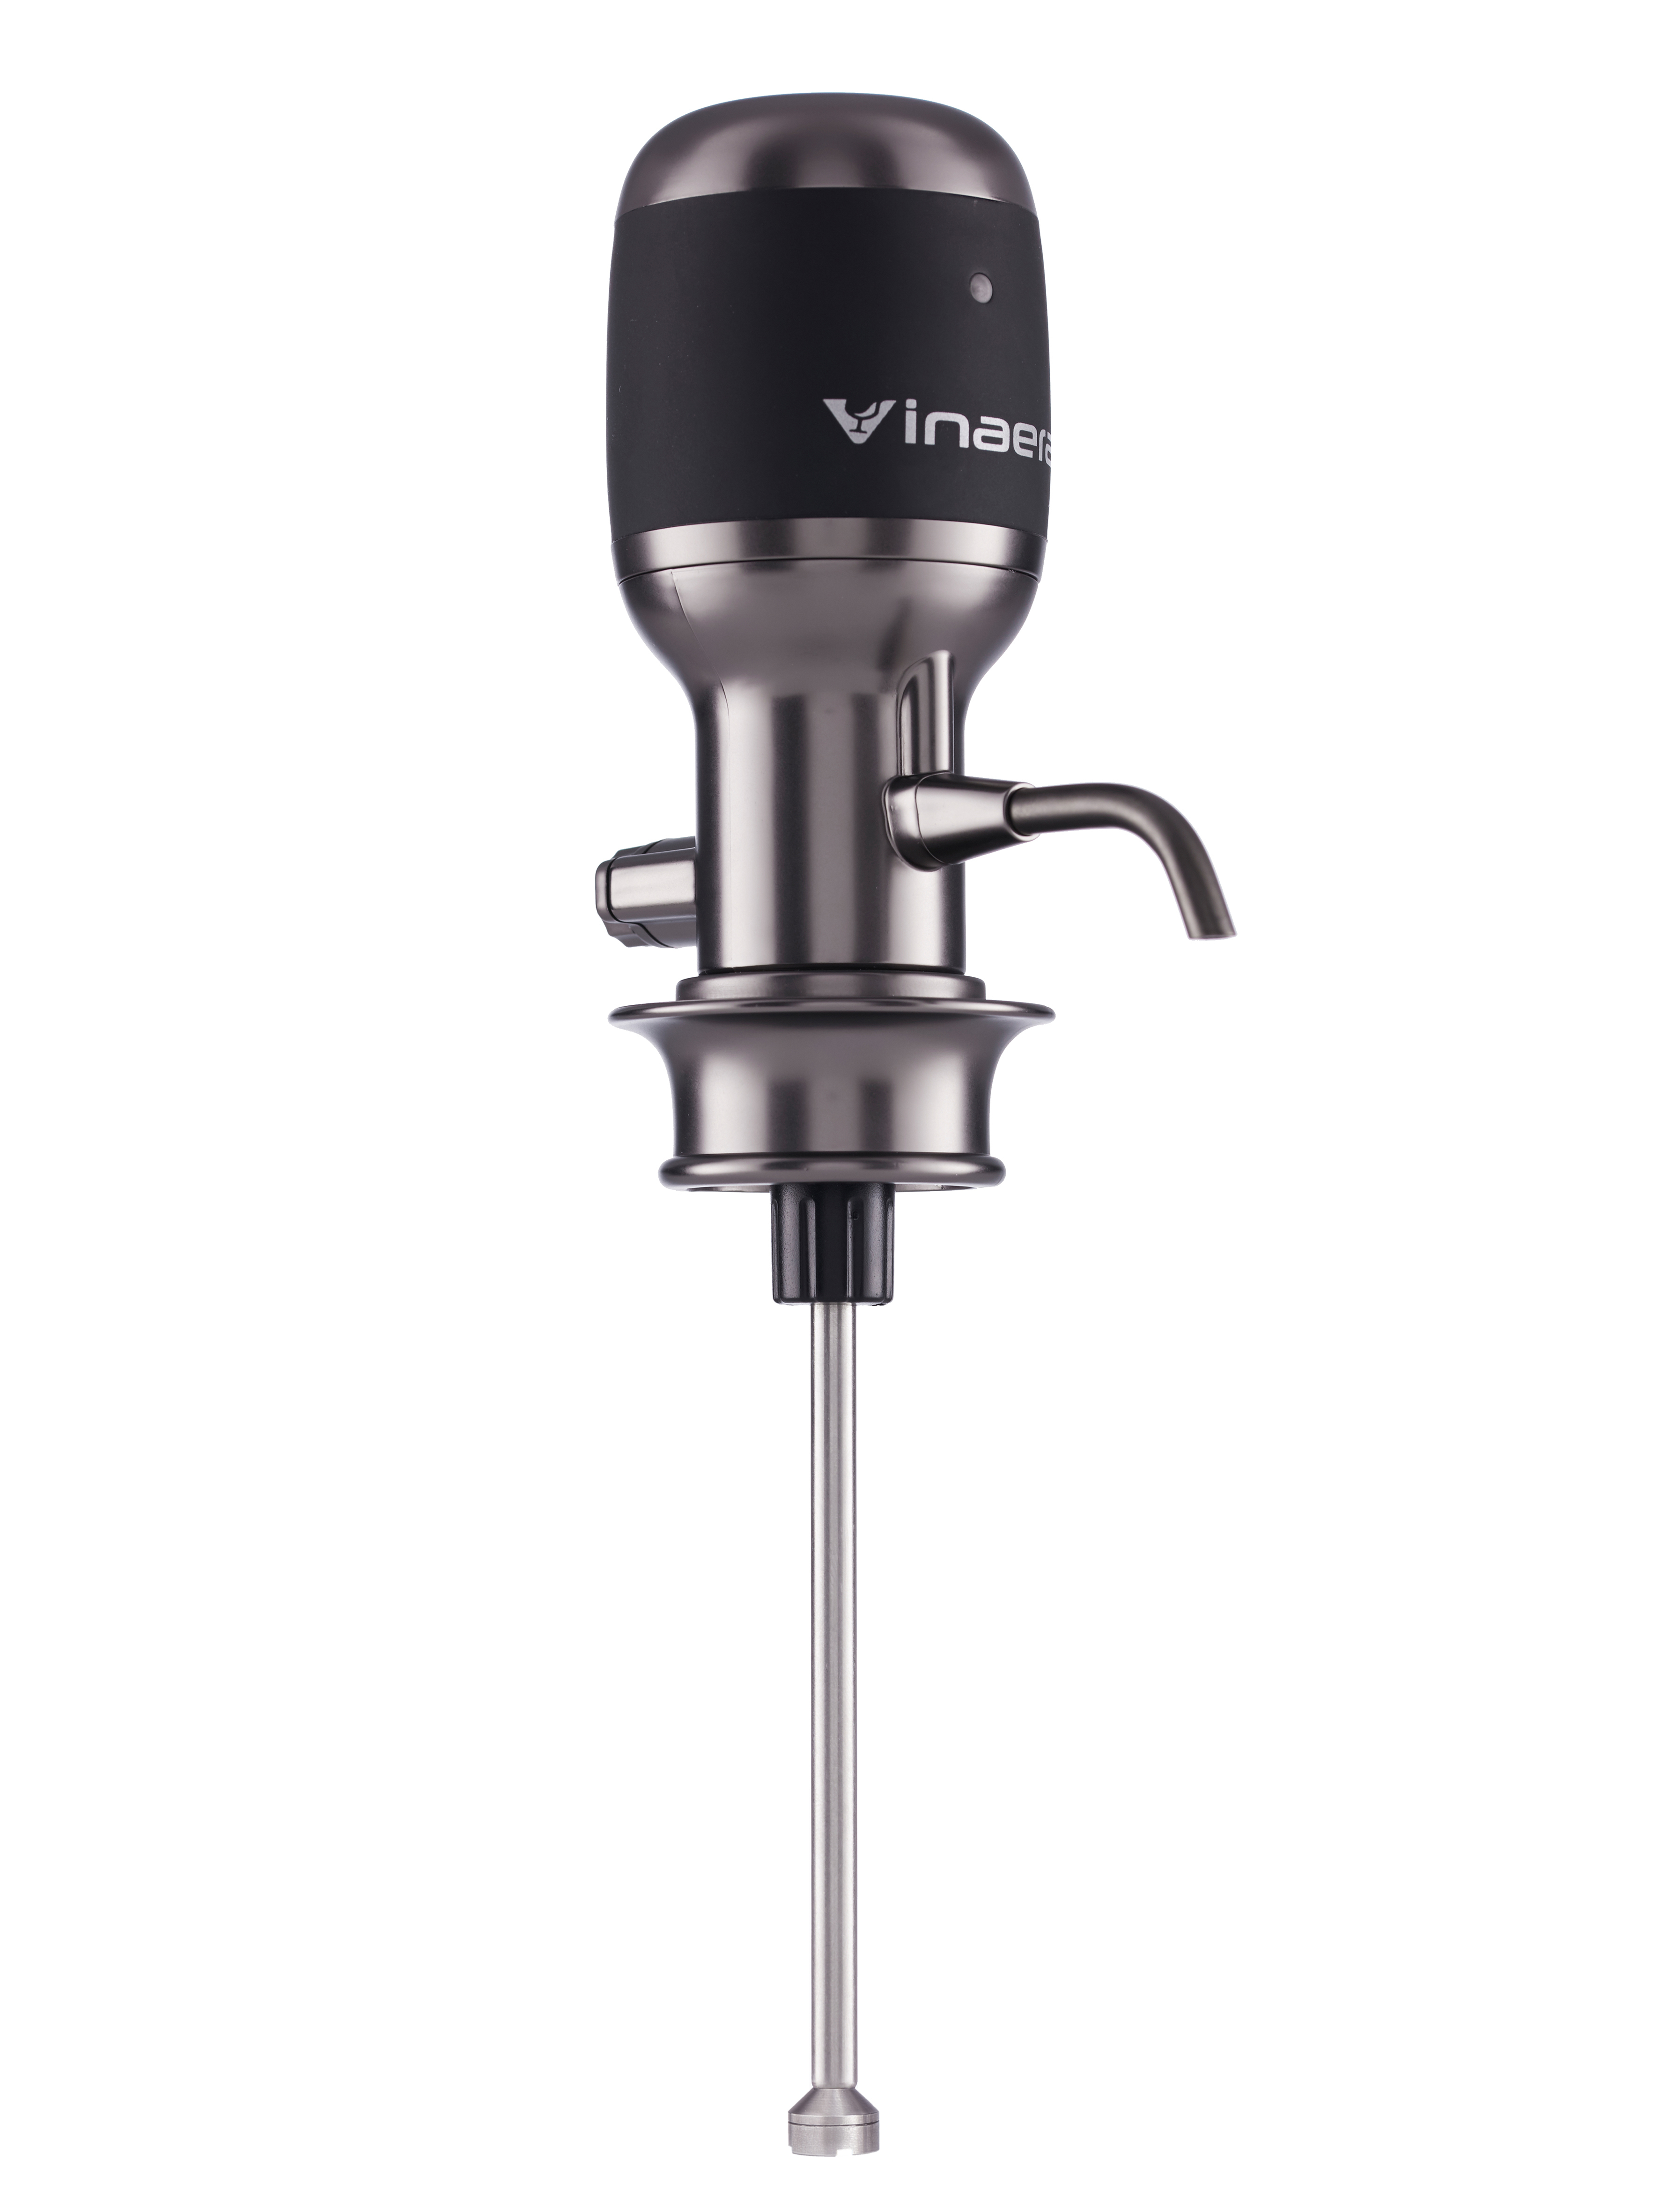 Купить аэраторы электрические. Vinaera Pro Adjustable Electric Wine Aerator. Vinaera Pro mv7 аэратор для вина. Vinaera Classic mv62. Аэратор для вина Xiaomi Vinaera Adjustable Electric Wine Aerator Pro-mv7, черный/серебристый.